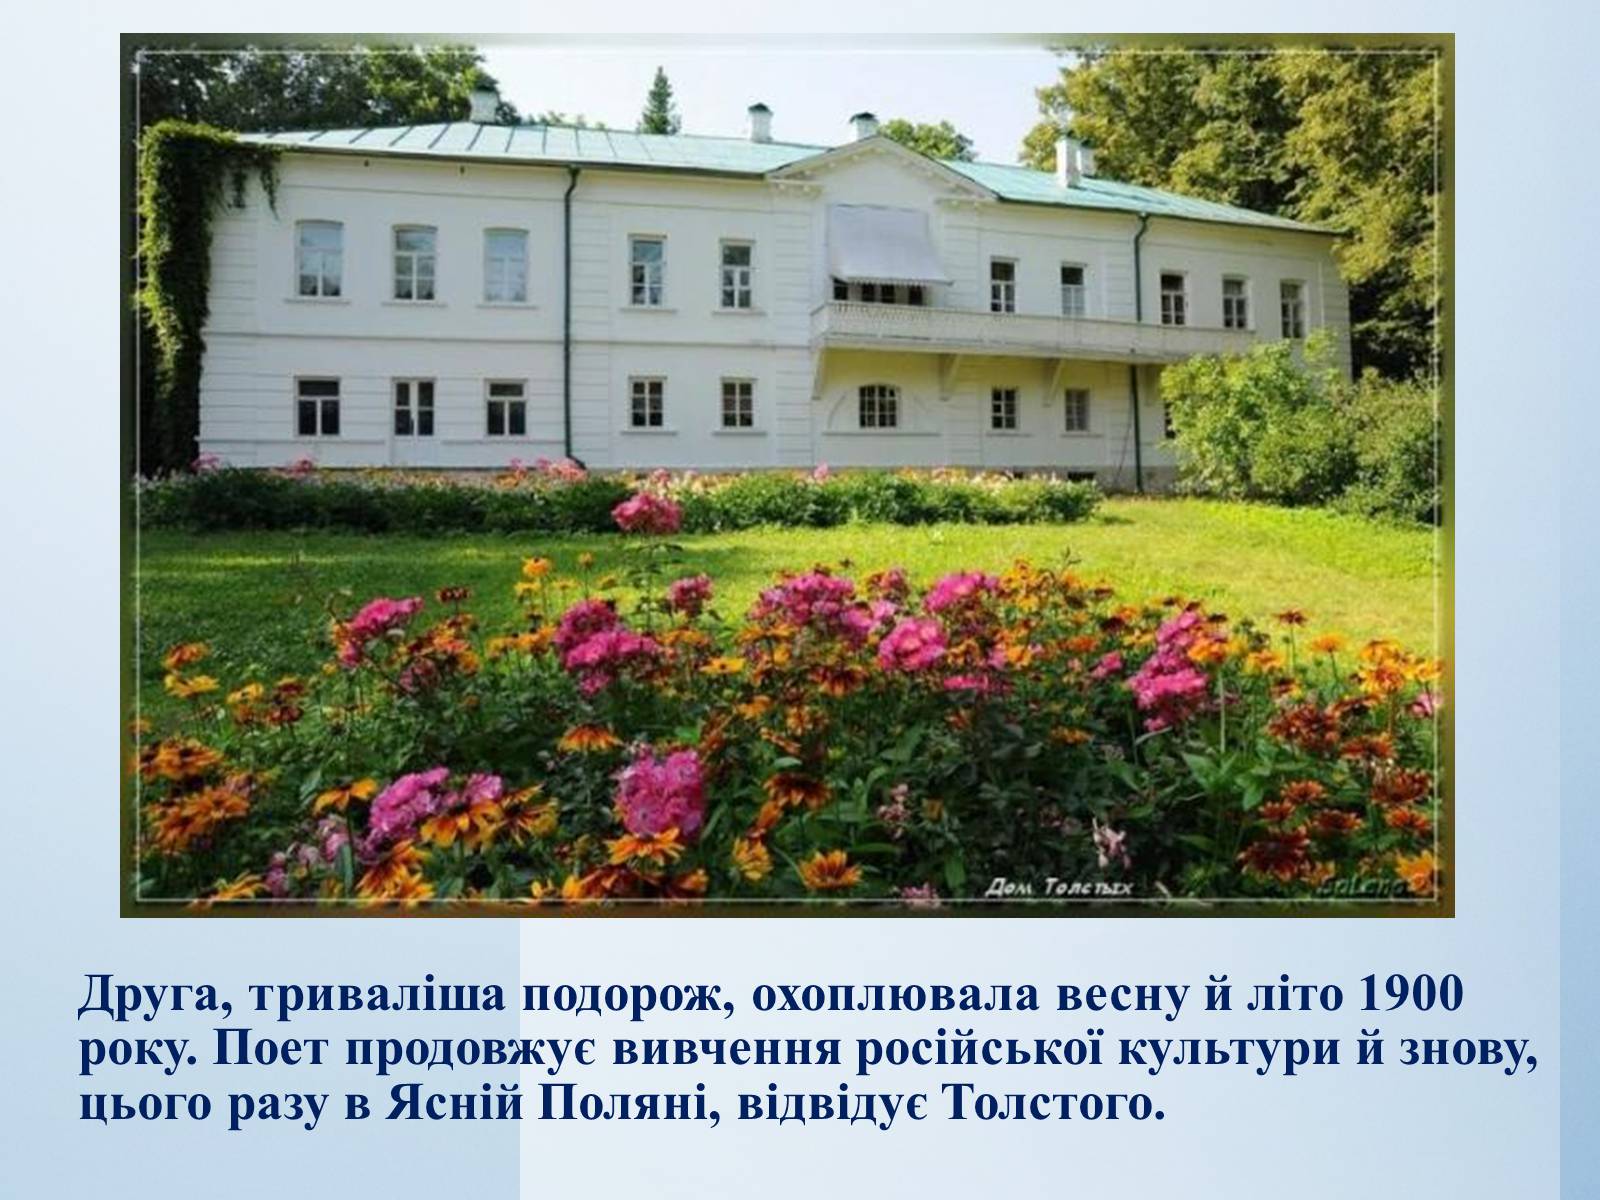 Государственный музей-усадьба Льва Толстого «Ясная Поляна»